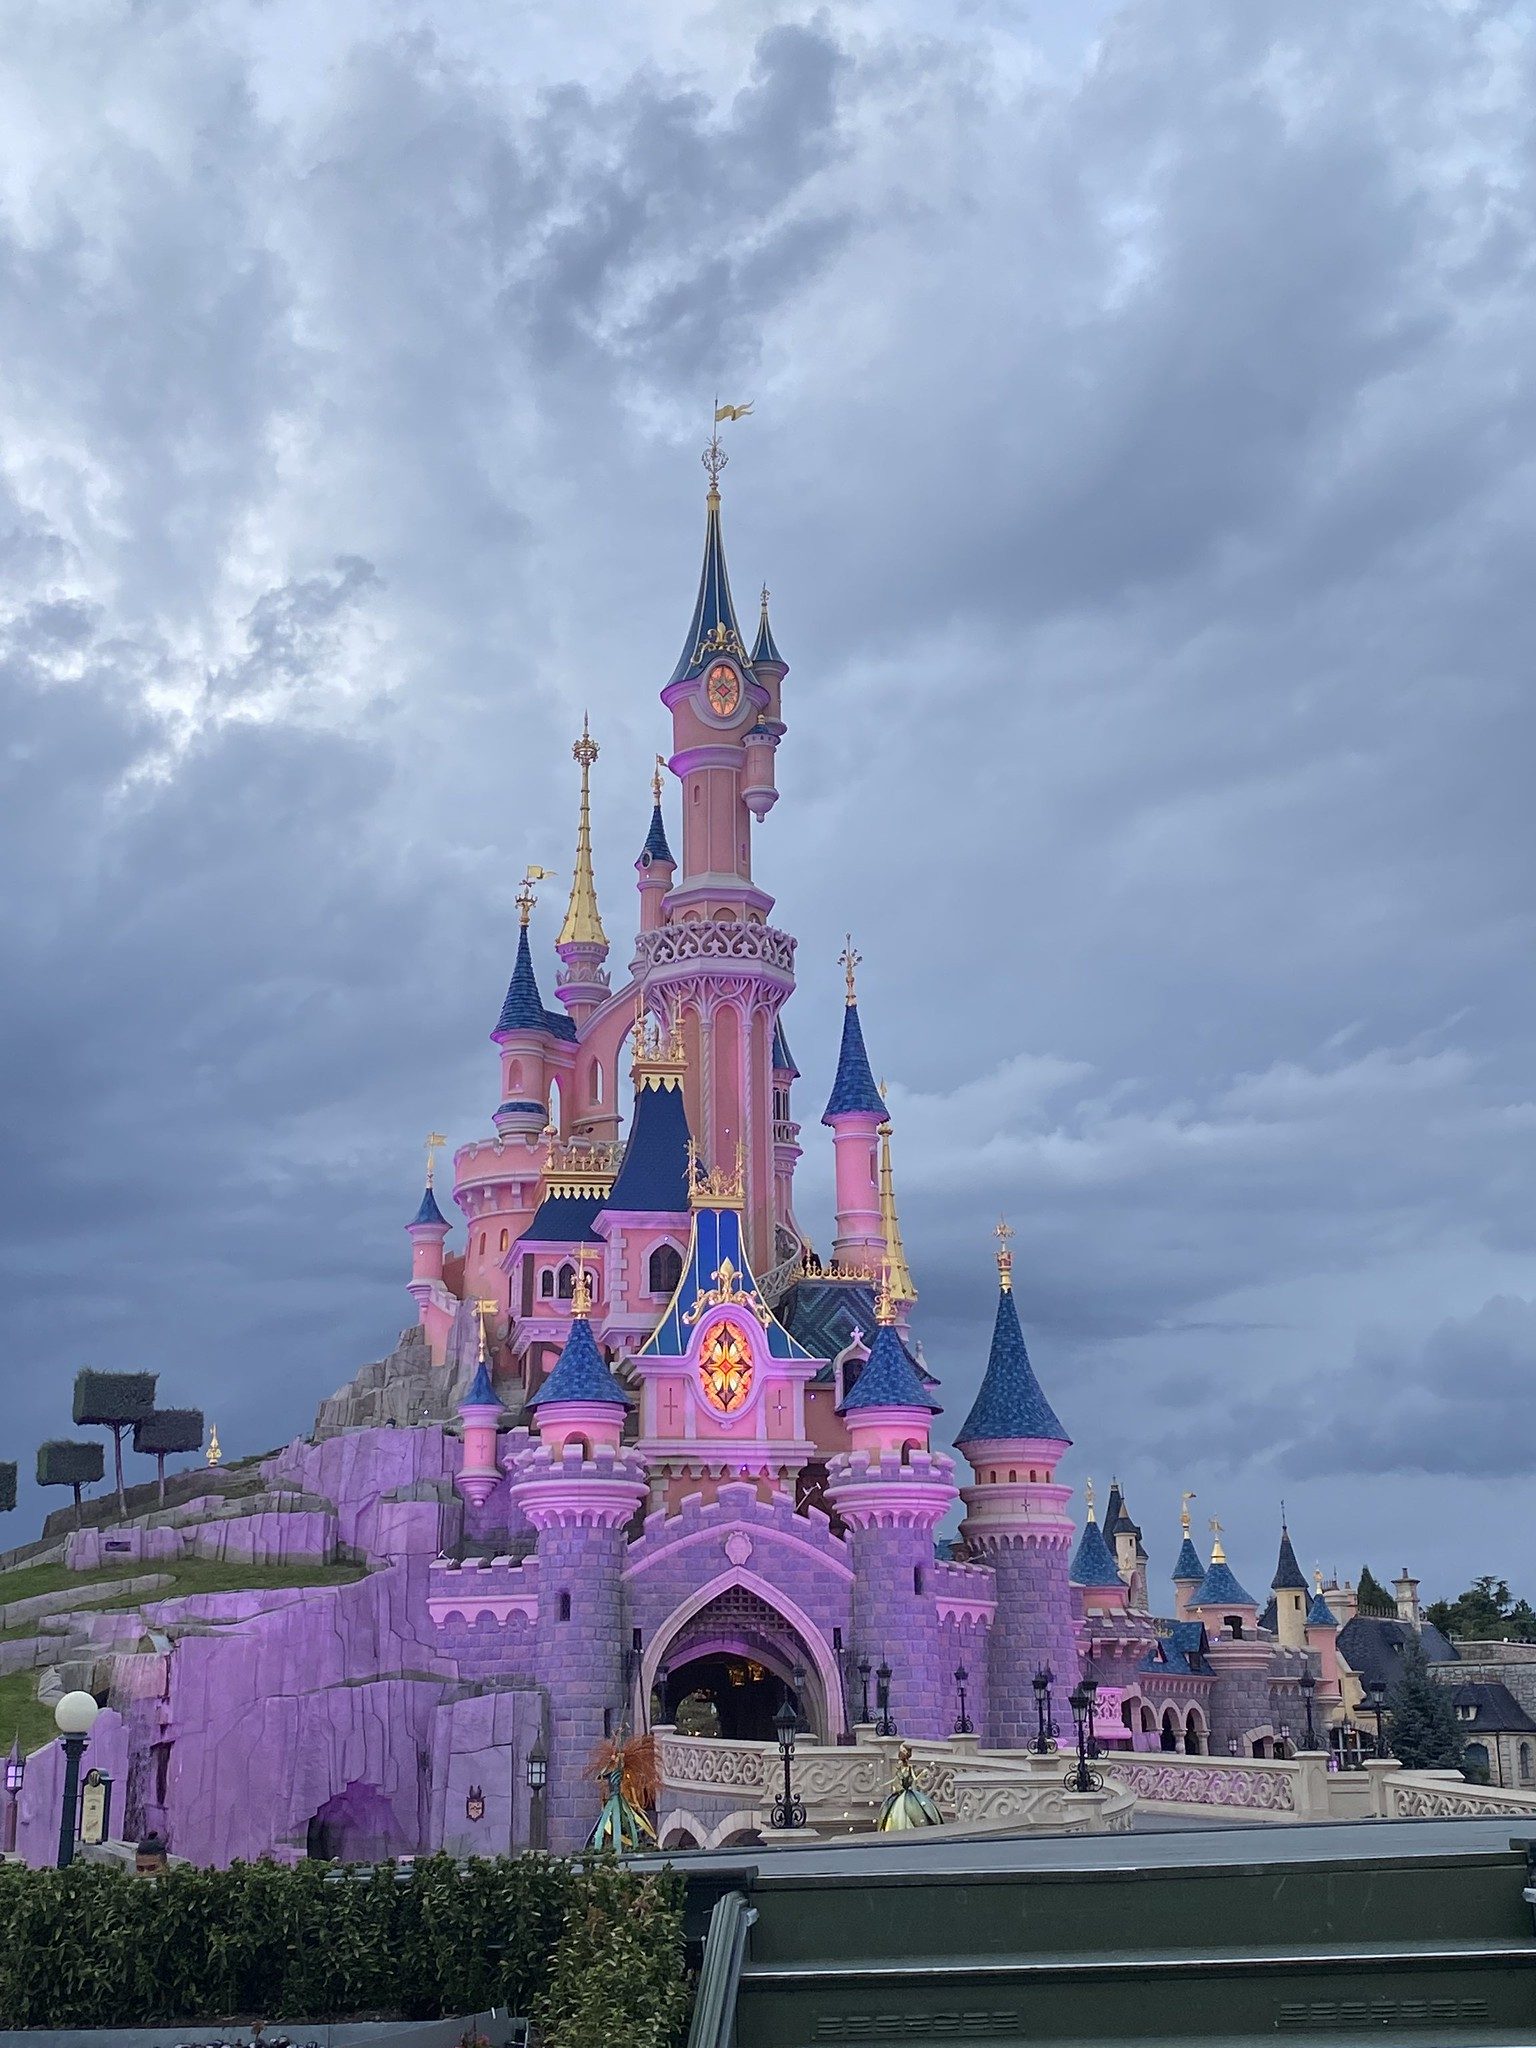 Disneyland Paris consigli per vivere al meglio il parco